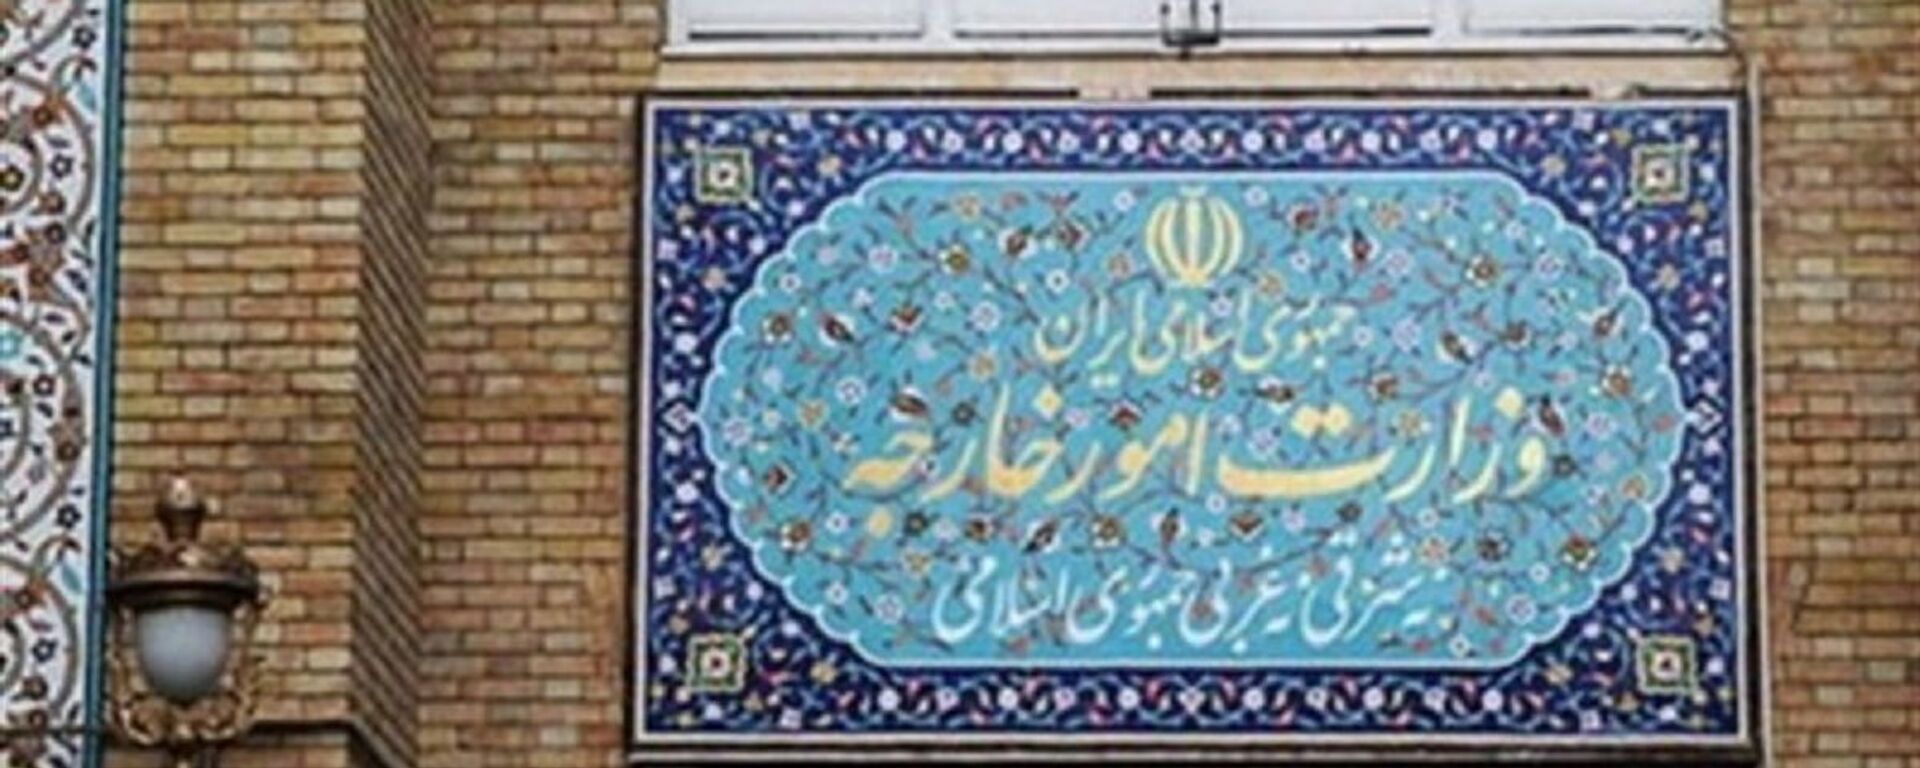 وزارت خارجه ایران - اسپوتنیک ایران  , 1920, 10.02.2021